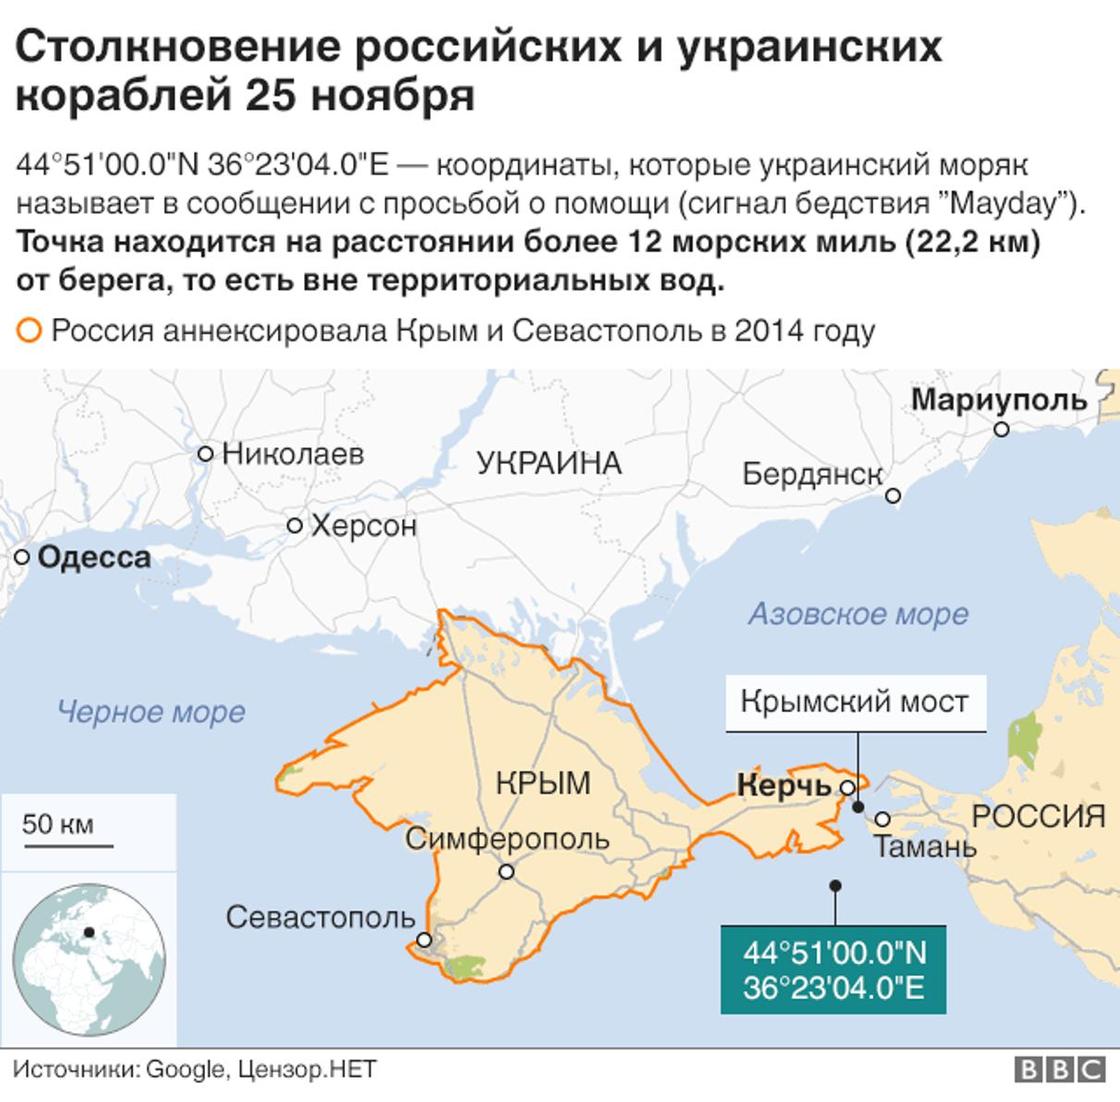 Международный трибунал по морскому праву обязал Россию освободить украинских моряков, задержанных в Керченском проливе